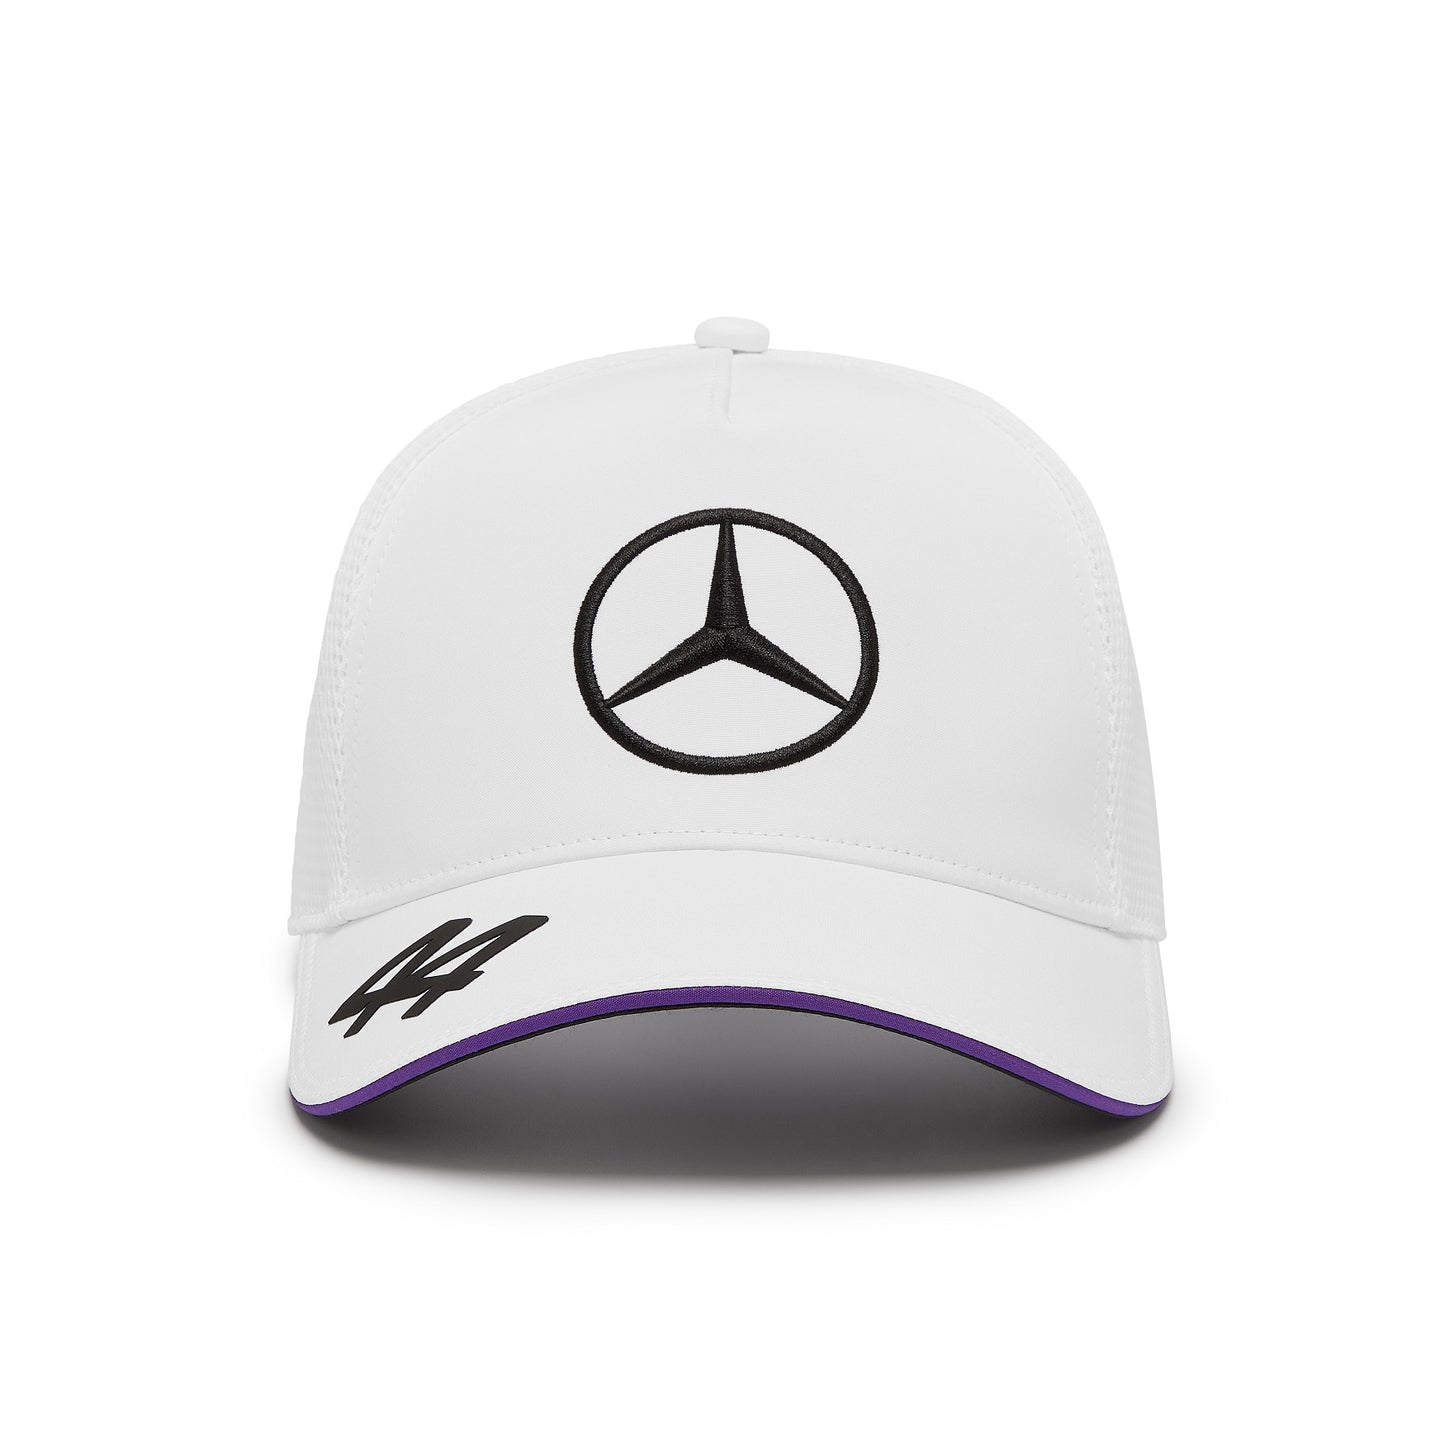 Mercedes Team LH Trucker Cap White